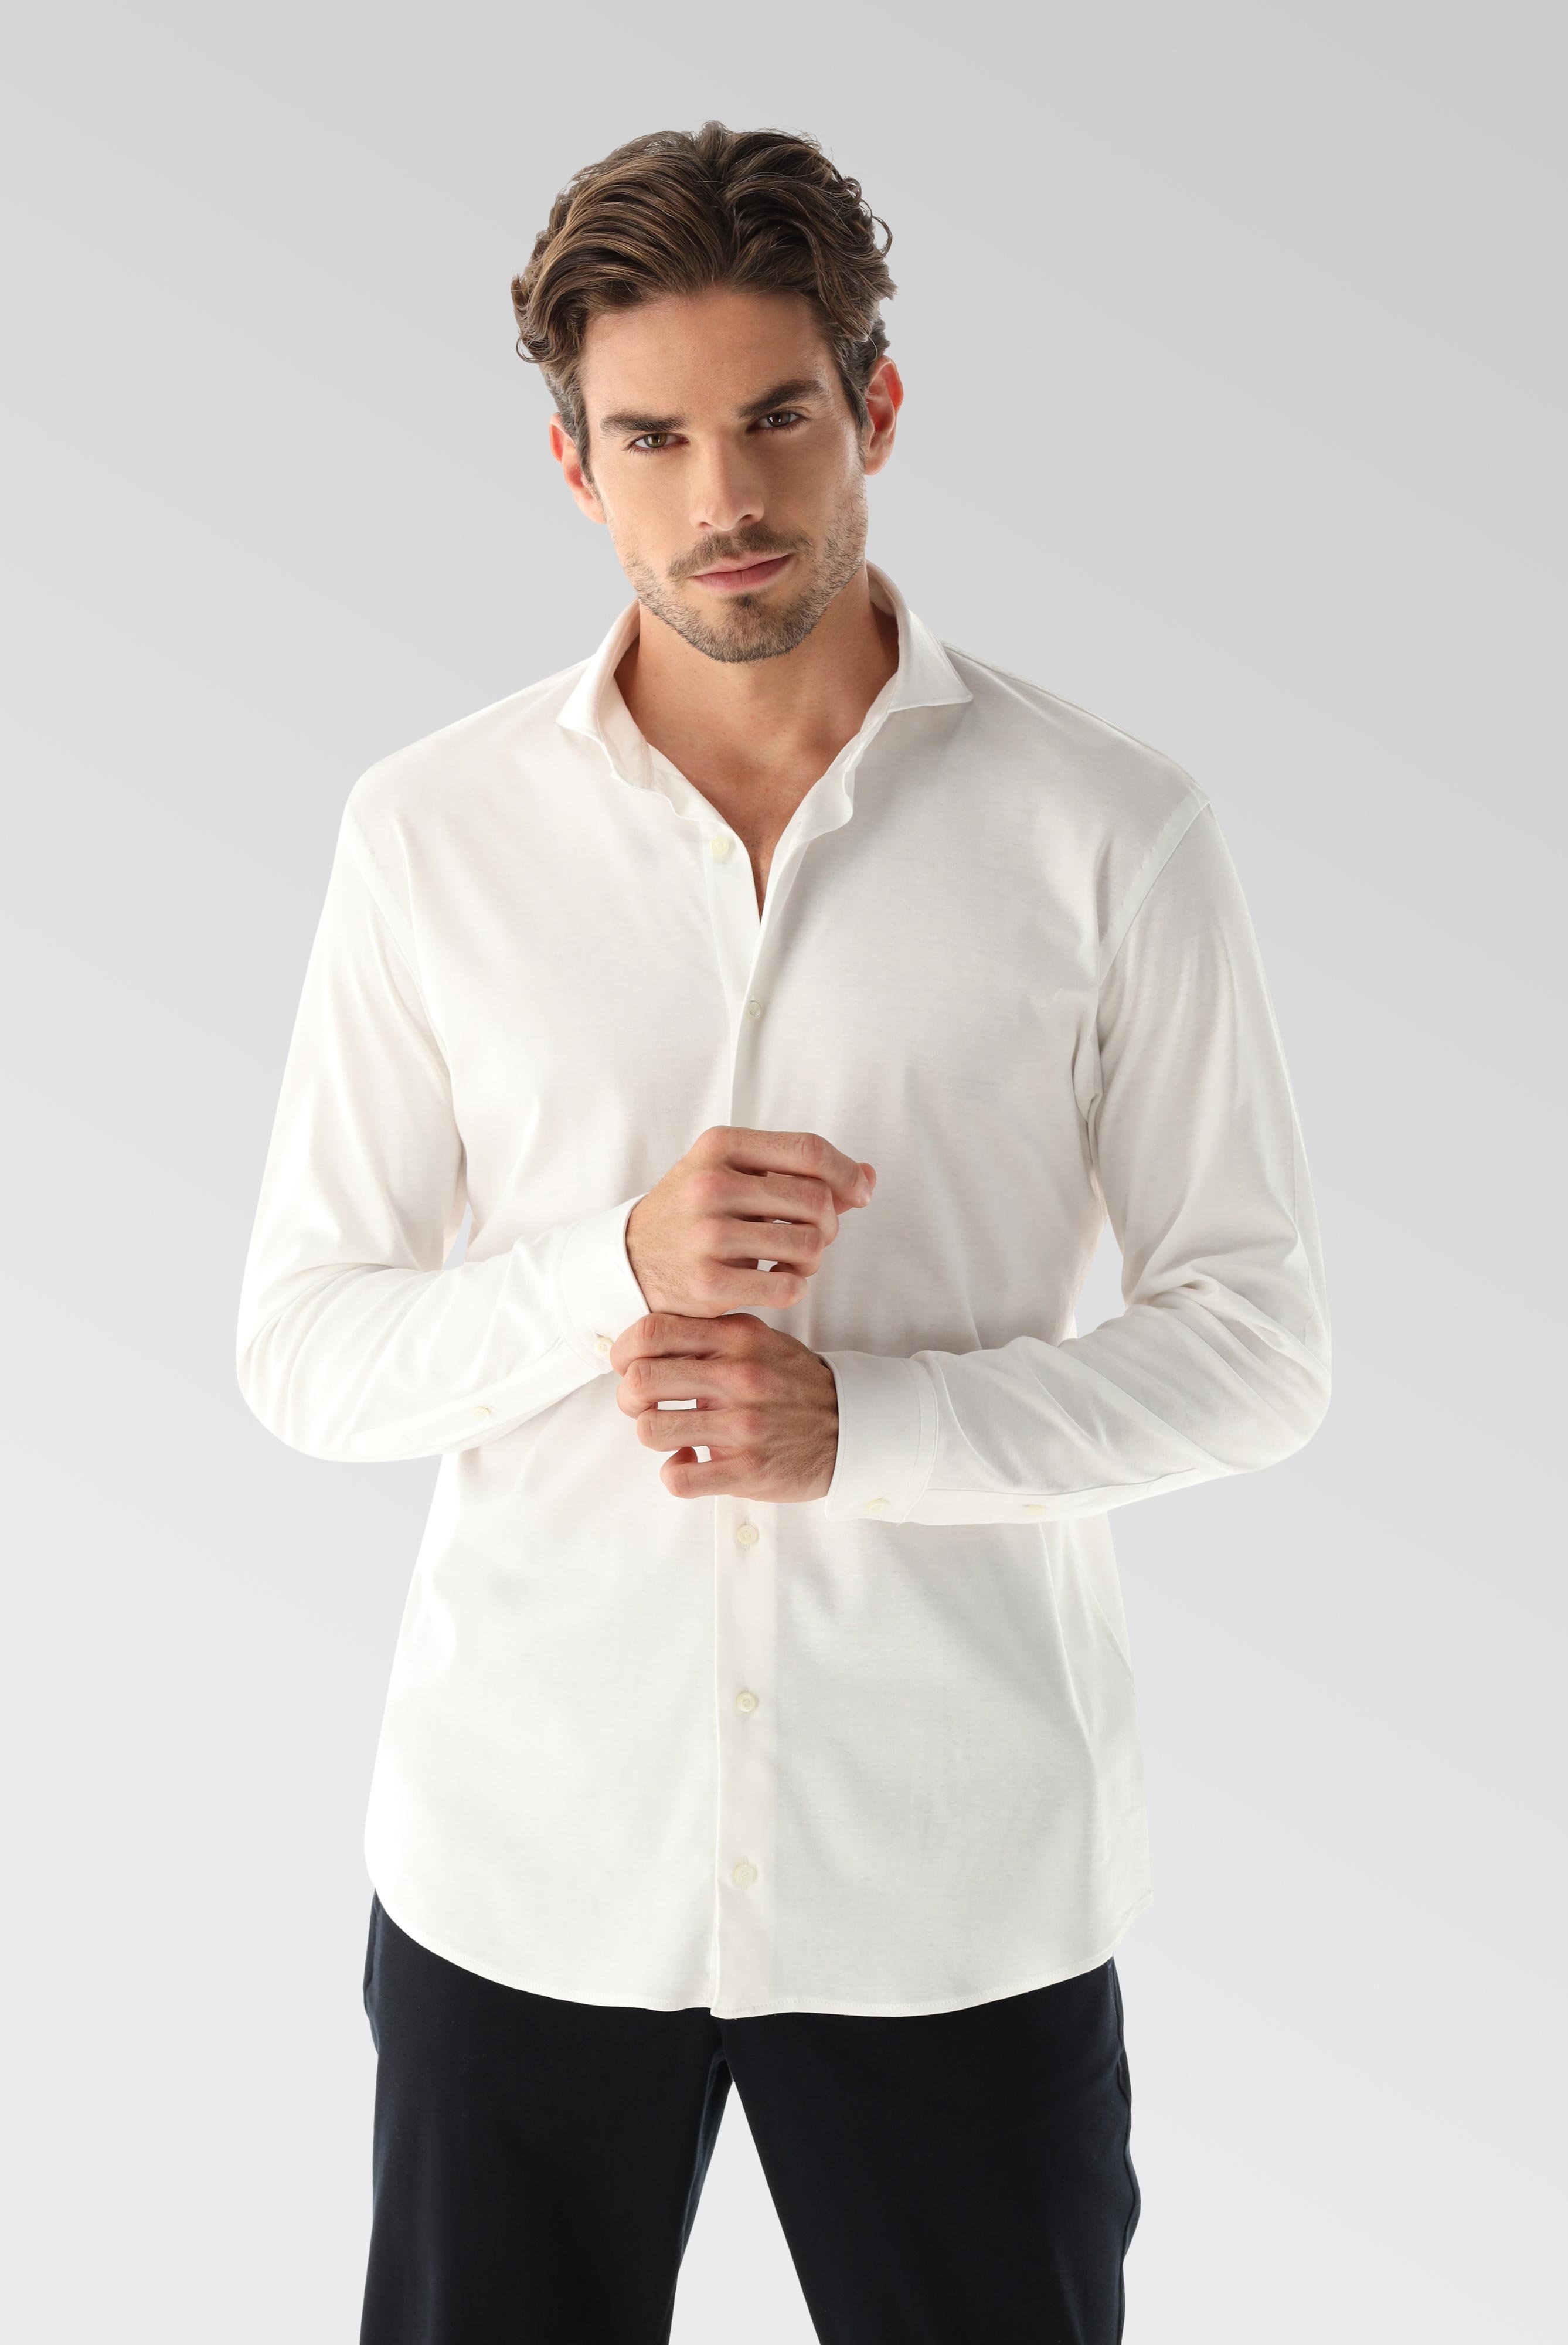 Bügelleichte Hemden+Jersey Hemd mit glänzender Optik Tailor Fit+20.1683.UC.180031.000.X3L